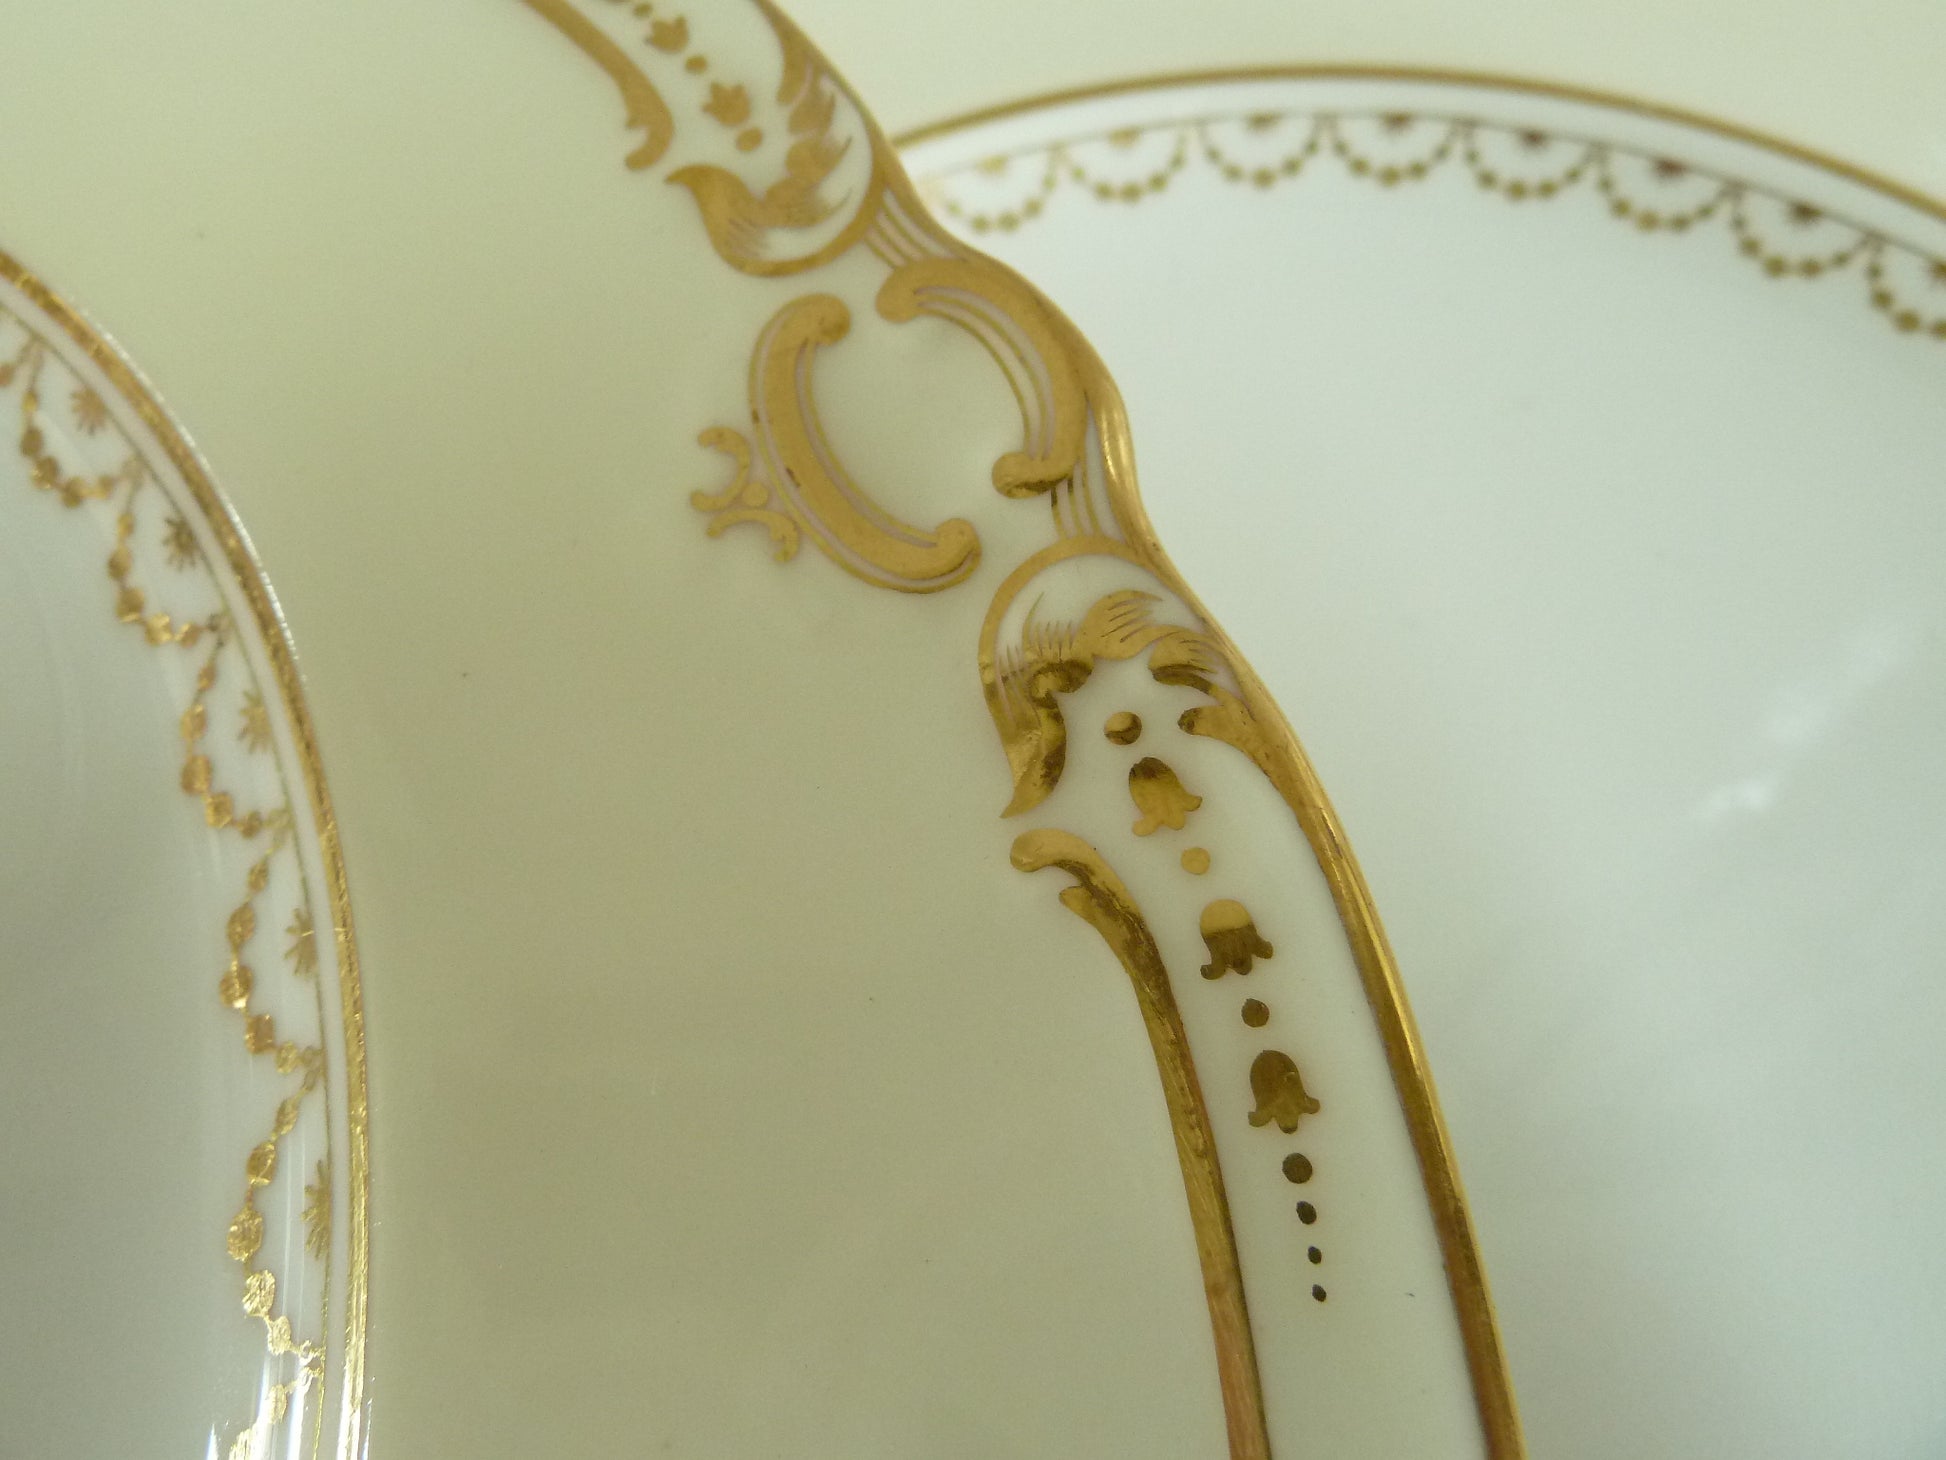 Minton Porcelain Plates Gilt Edges - 43 Chesapeake Court Antiques